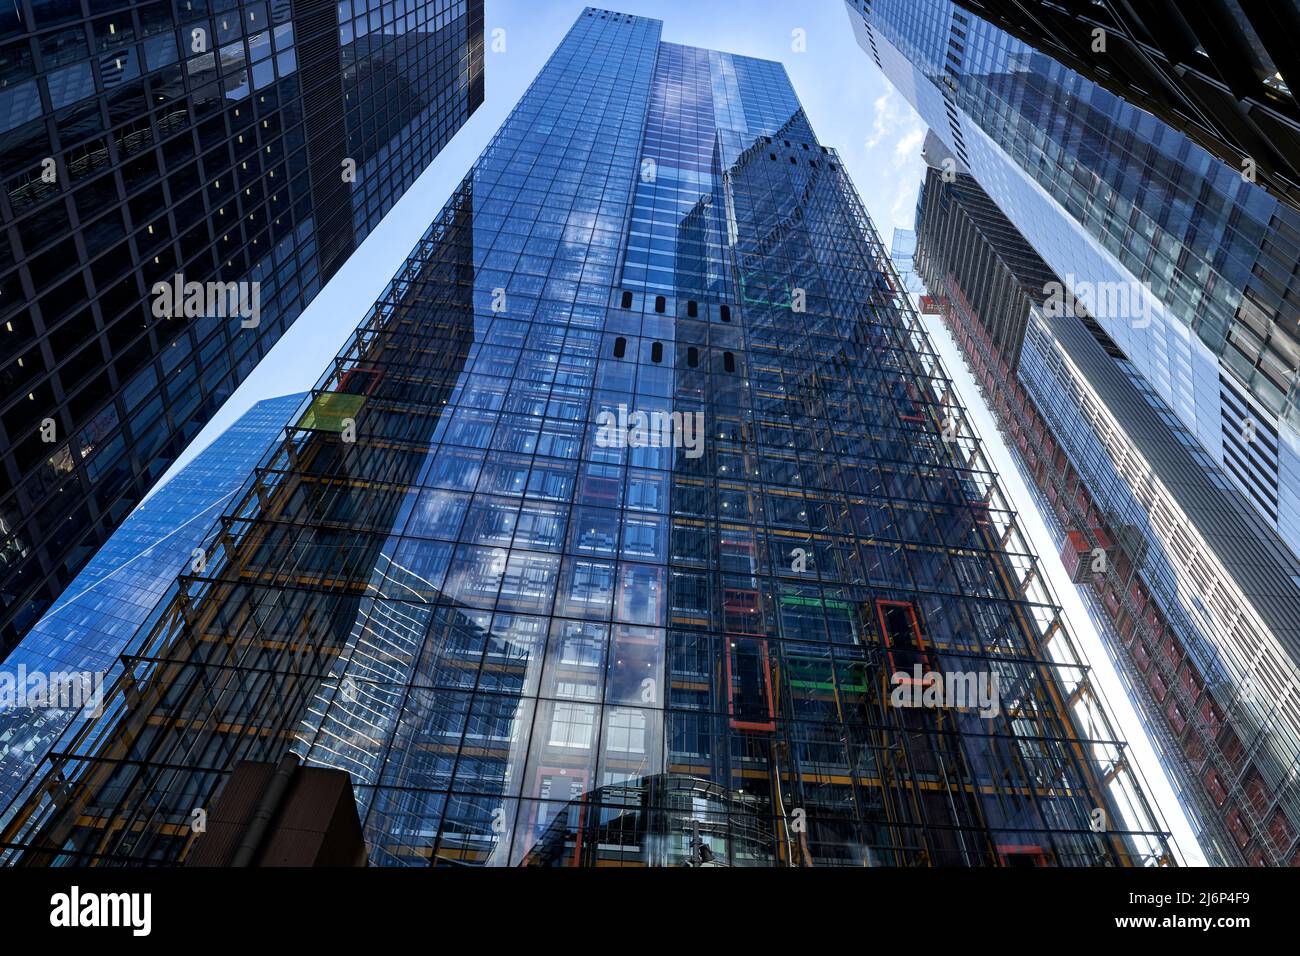 Fotografia astratta panoramica della moderna architettura in vetro della città di Londra Foto Stock